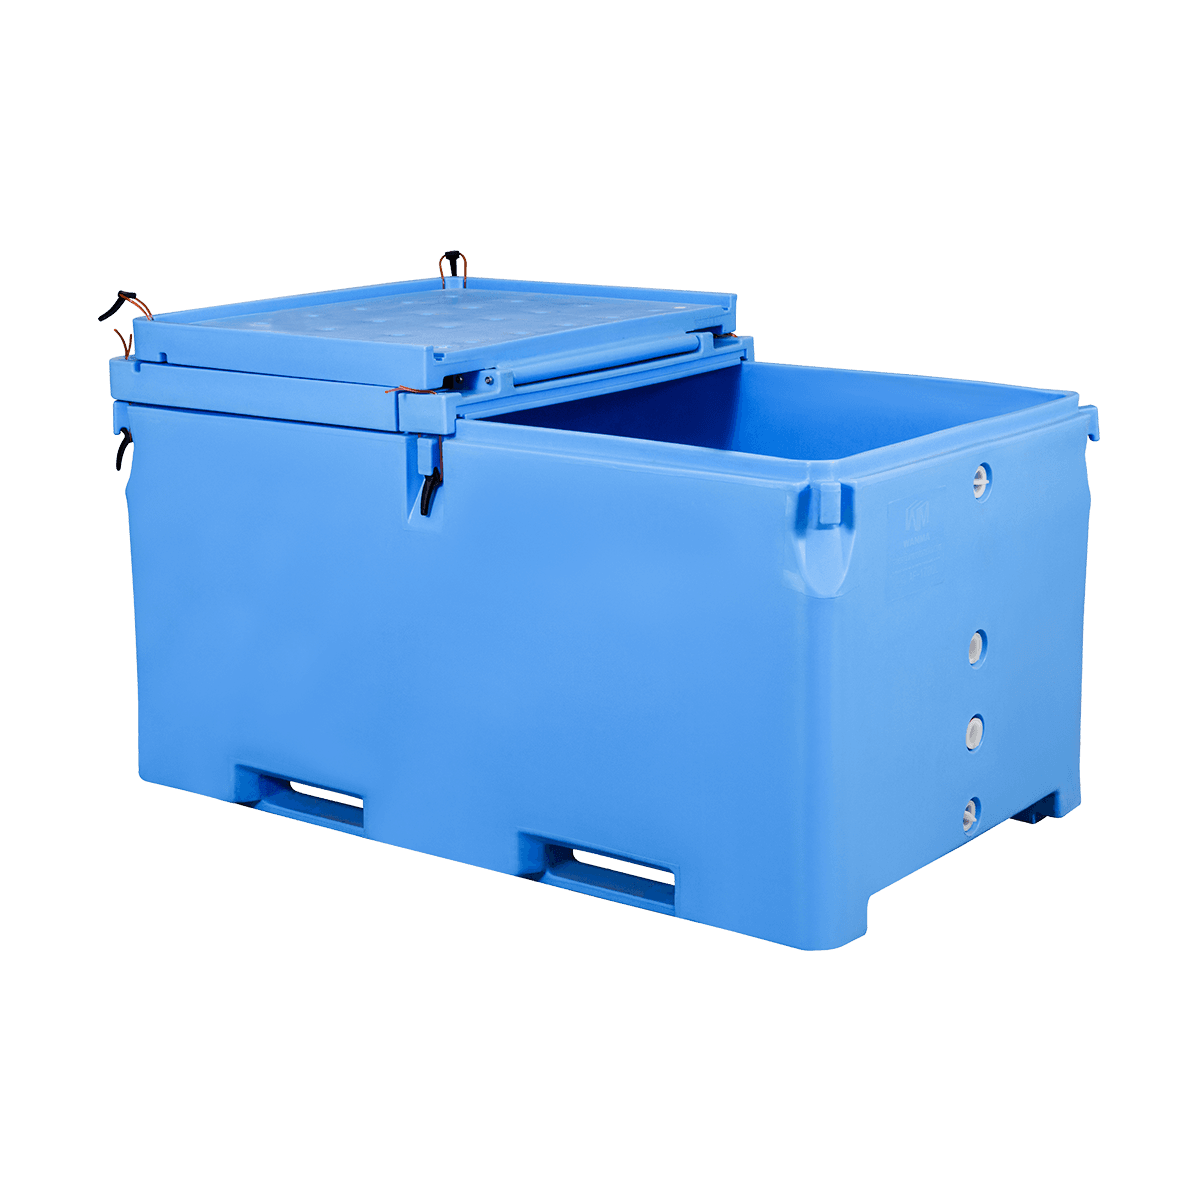 AF-1700L 用于冷链运输和生产的绝缘散装容器